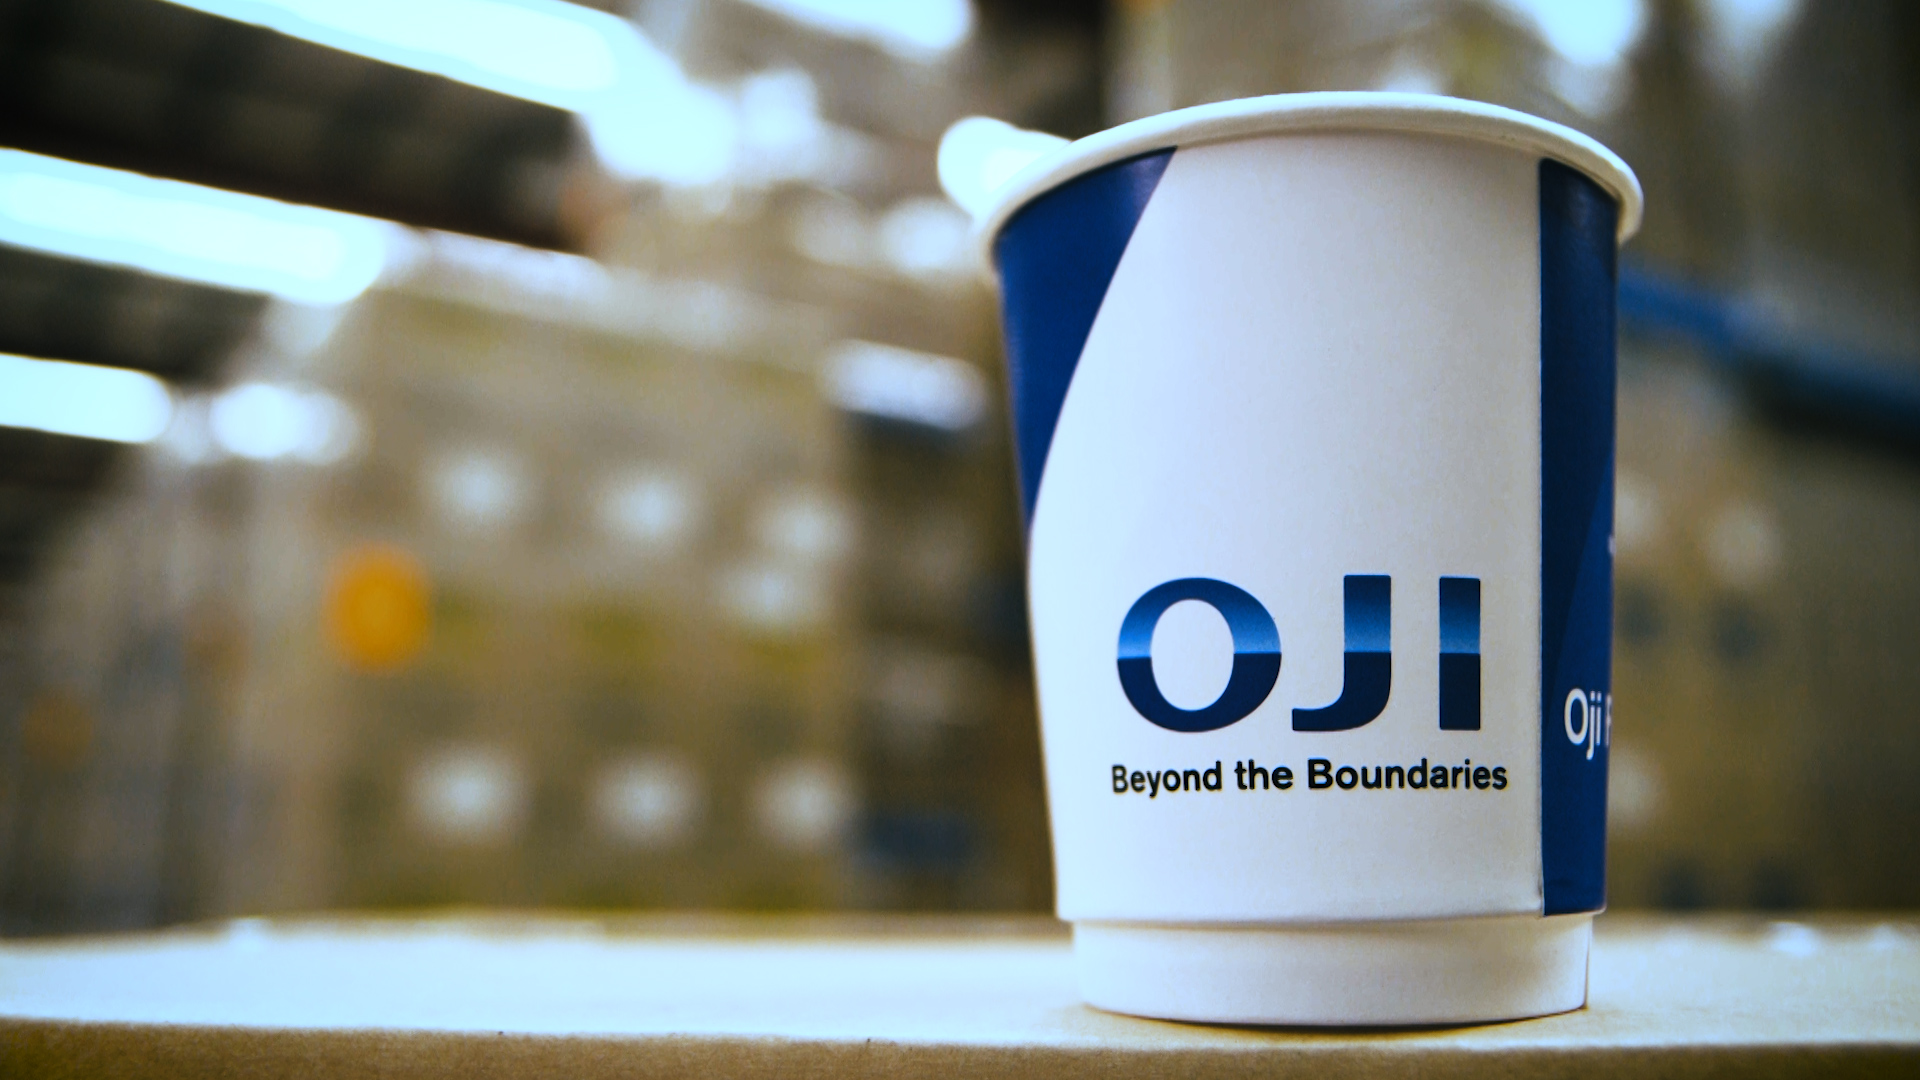 Oji Fibre Solutions Makes Paper Cups